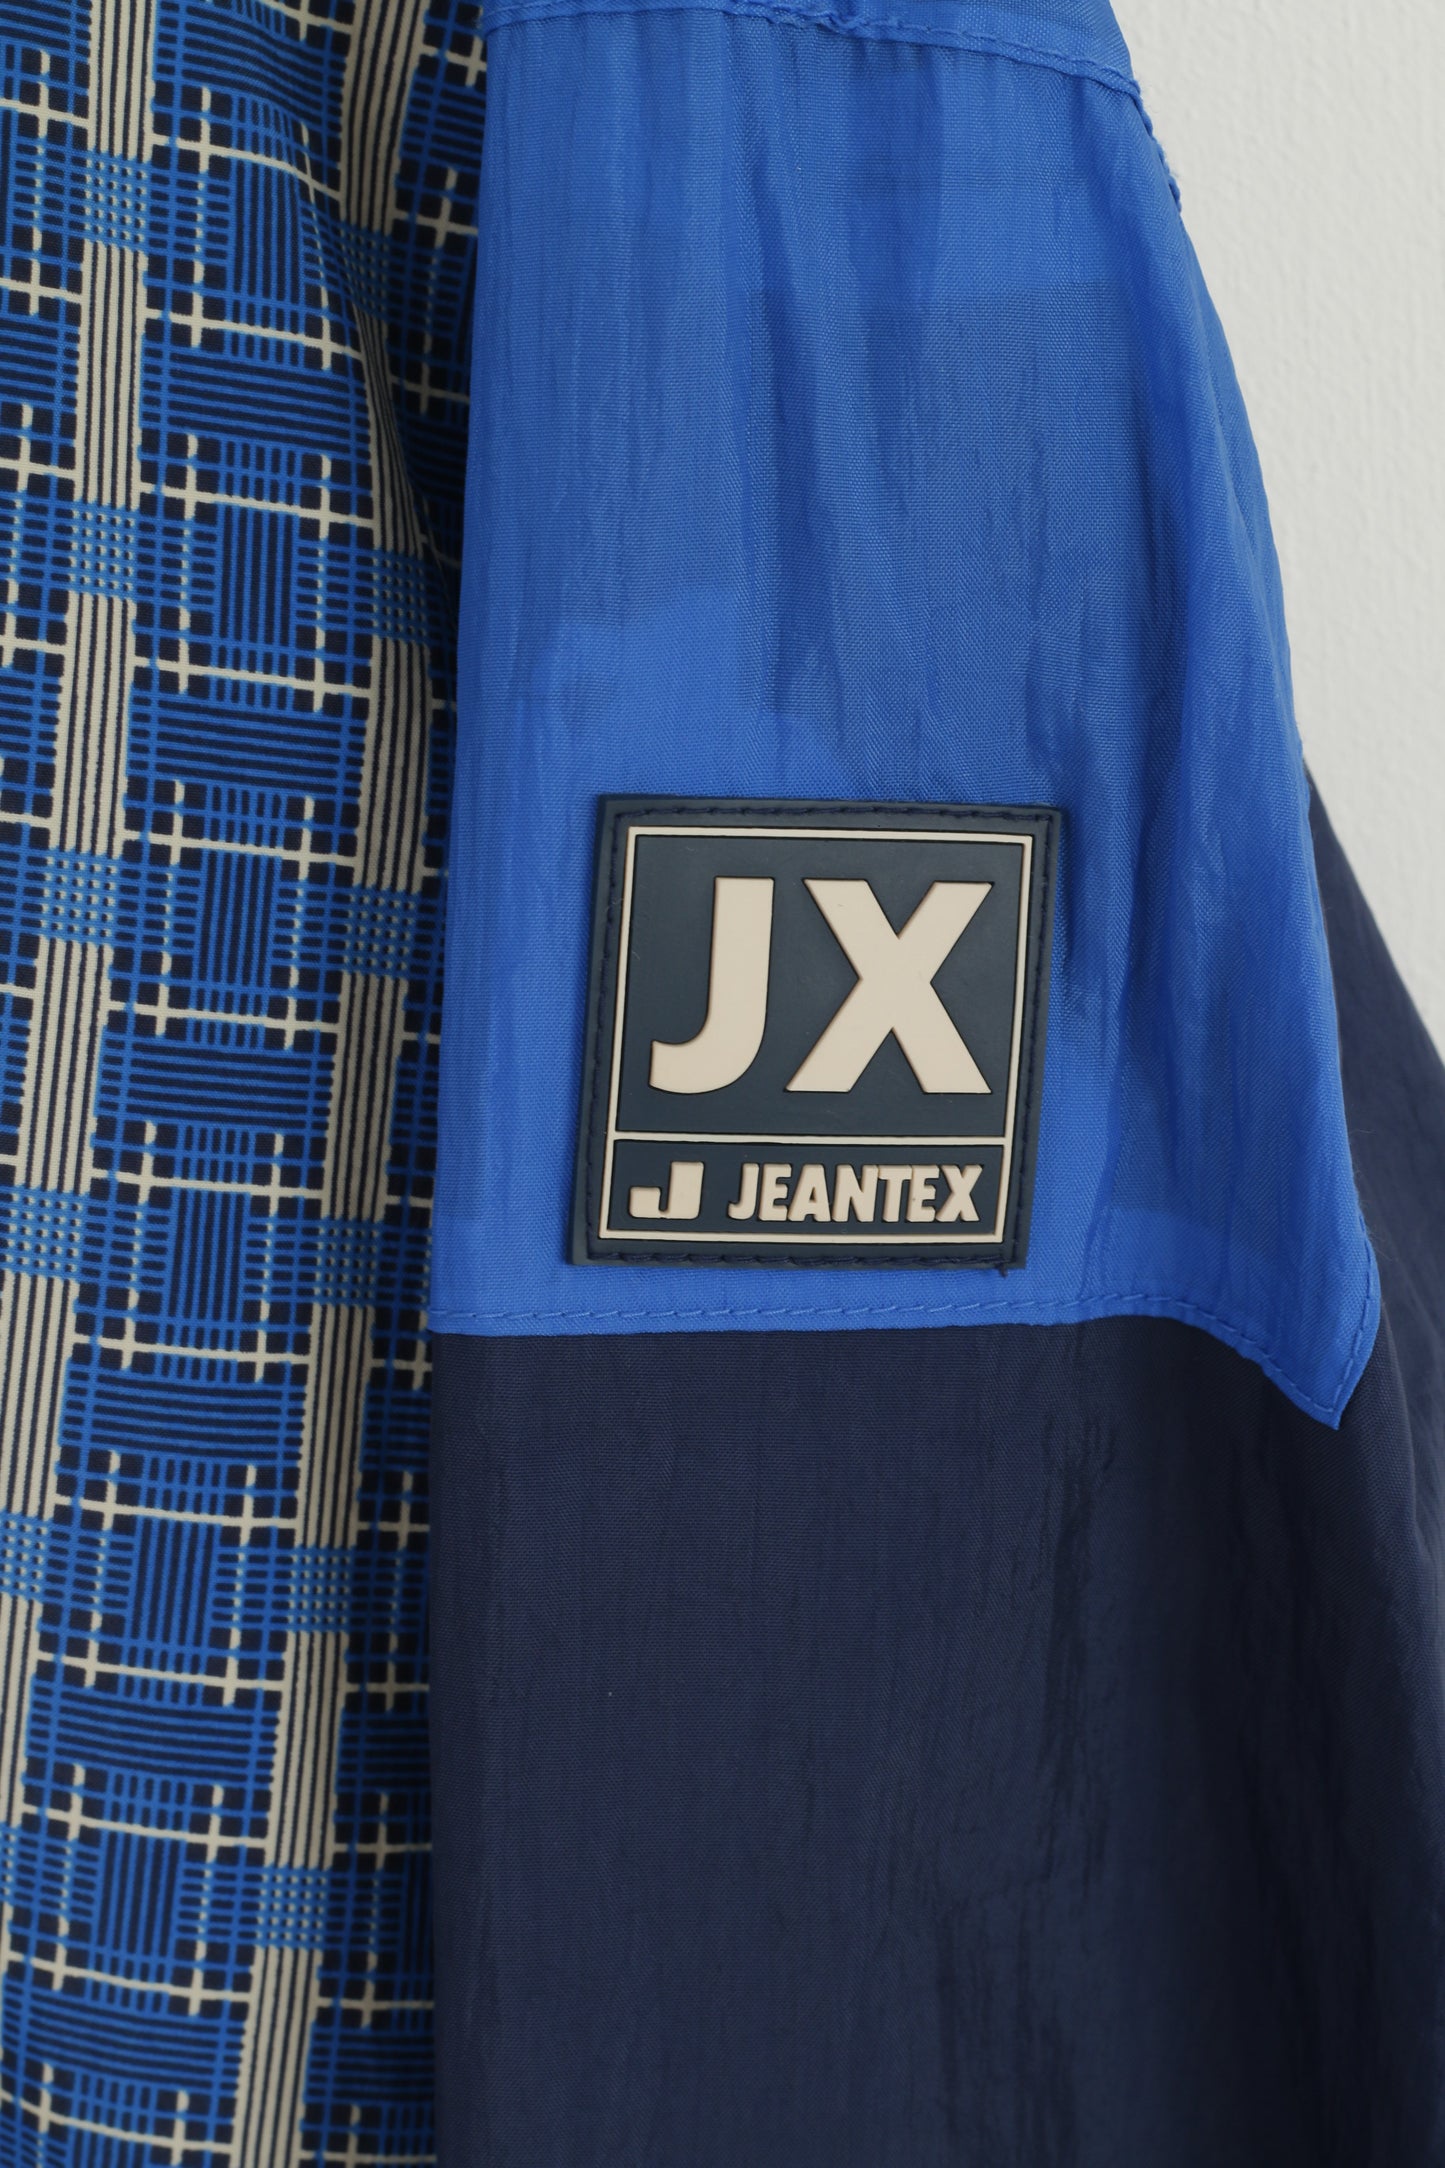 Giacca Jeantex da uomo XL 46/48 blu con cappuccio in nylon impermeabile con cerniera festival